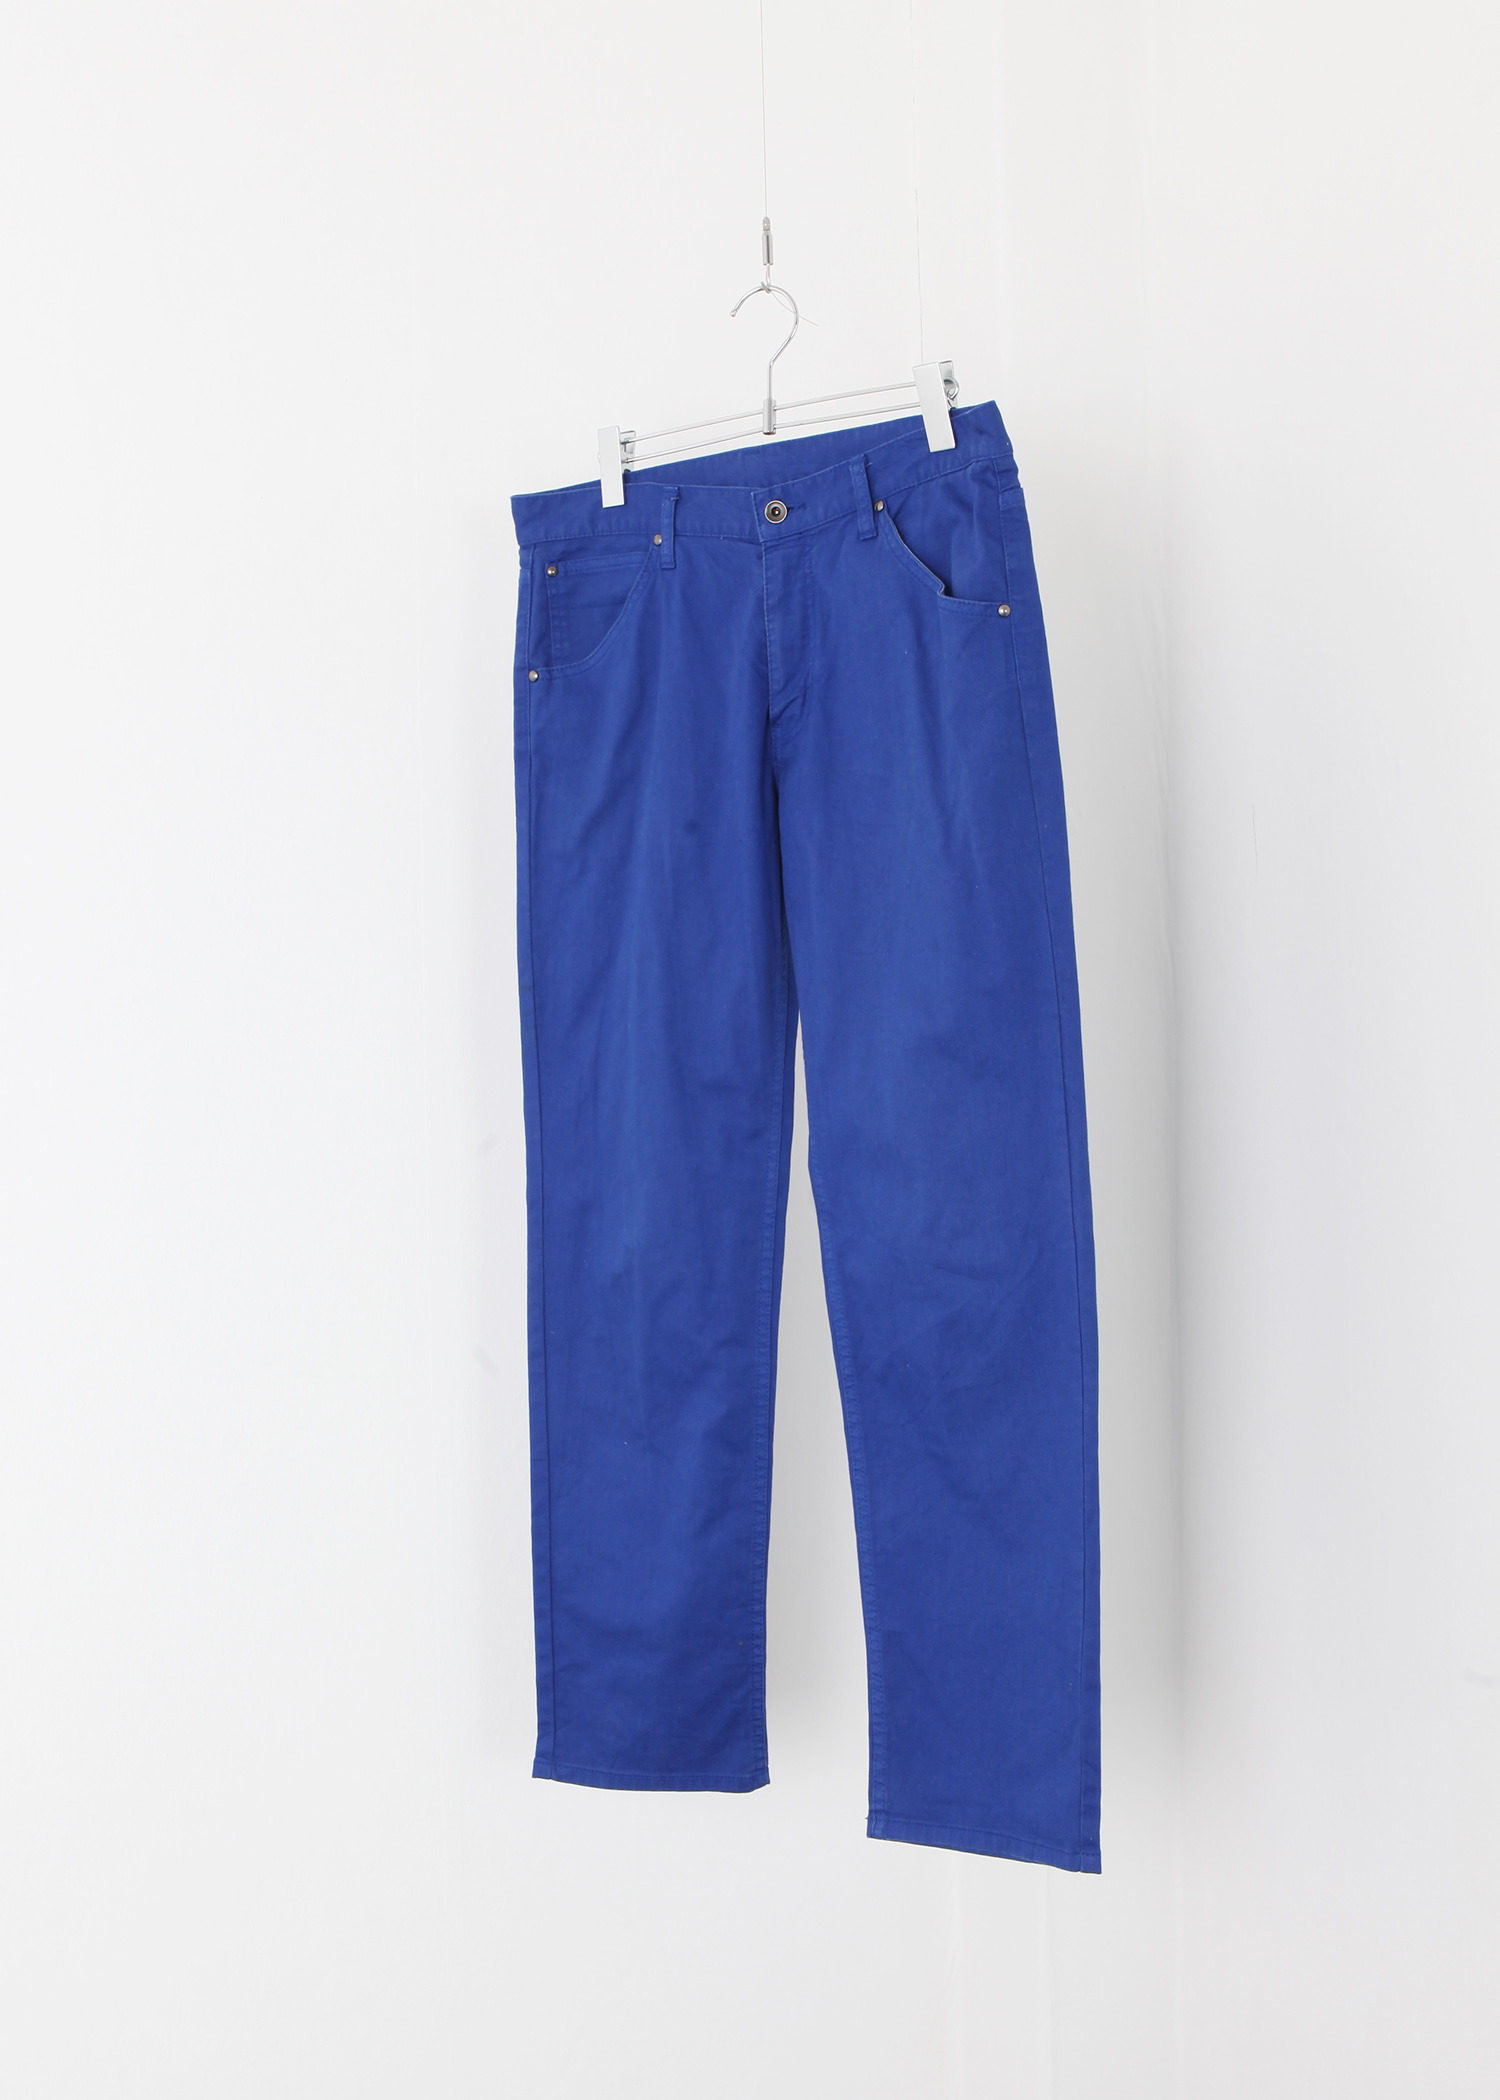 select vintage : blue jeans